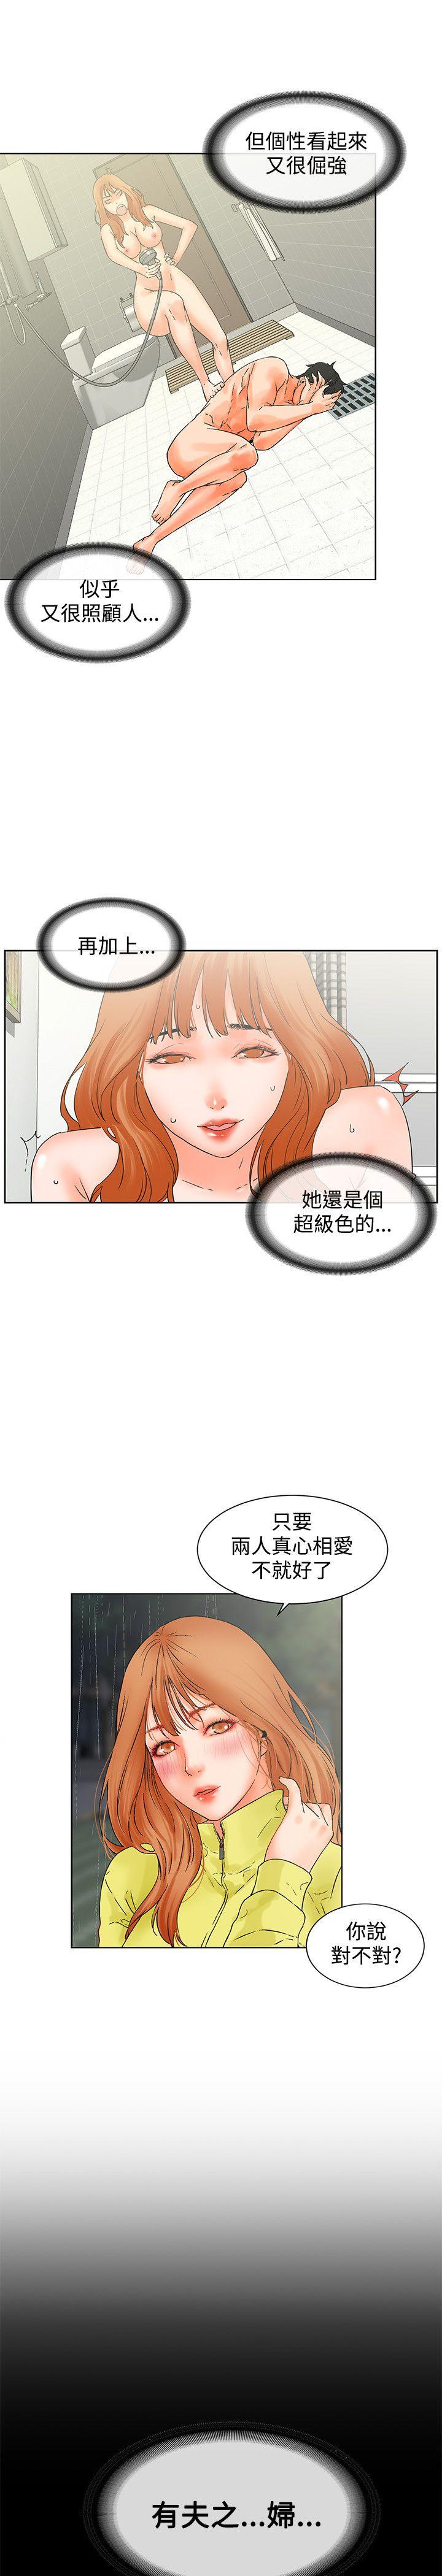 韩国污漫画 交往的條件 第14话 20